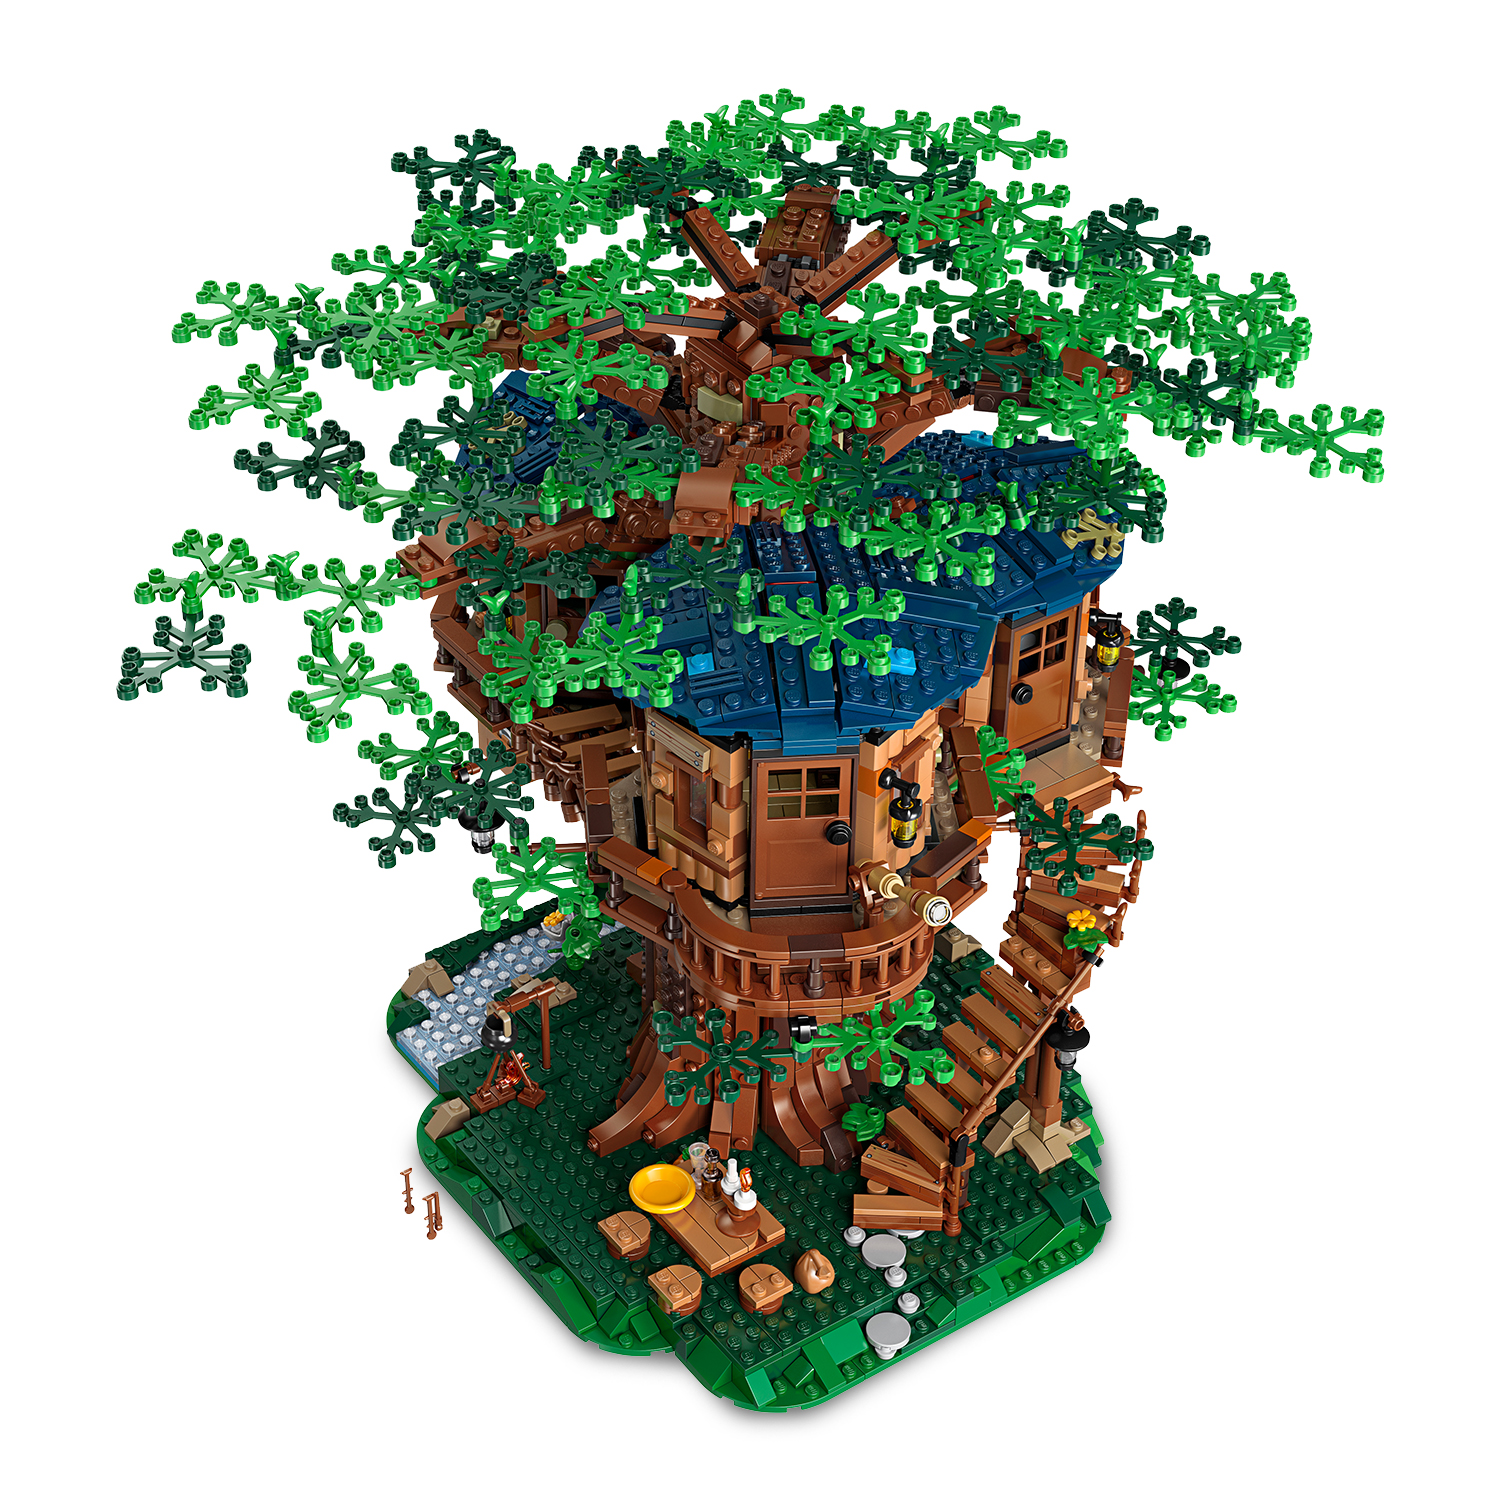 Lego ideas 21318 casa sull'albero, modellino da costruire con elementi in plastica pe, con 3 casette e minifigure, idee regalo - LEGO IDEAS, Lego